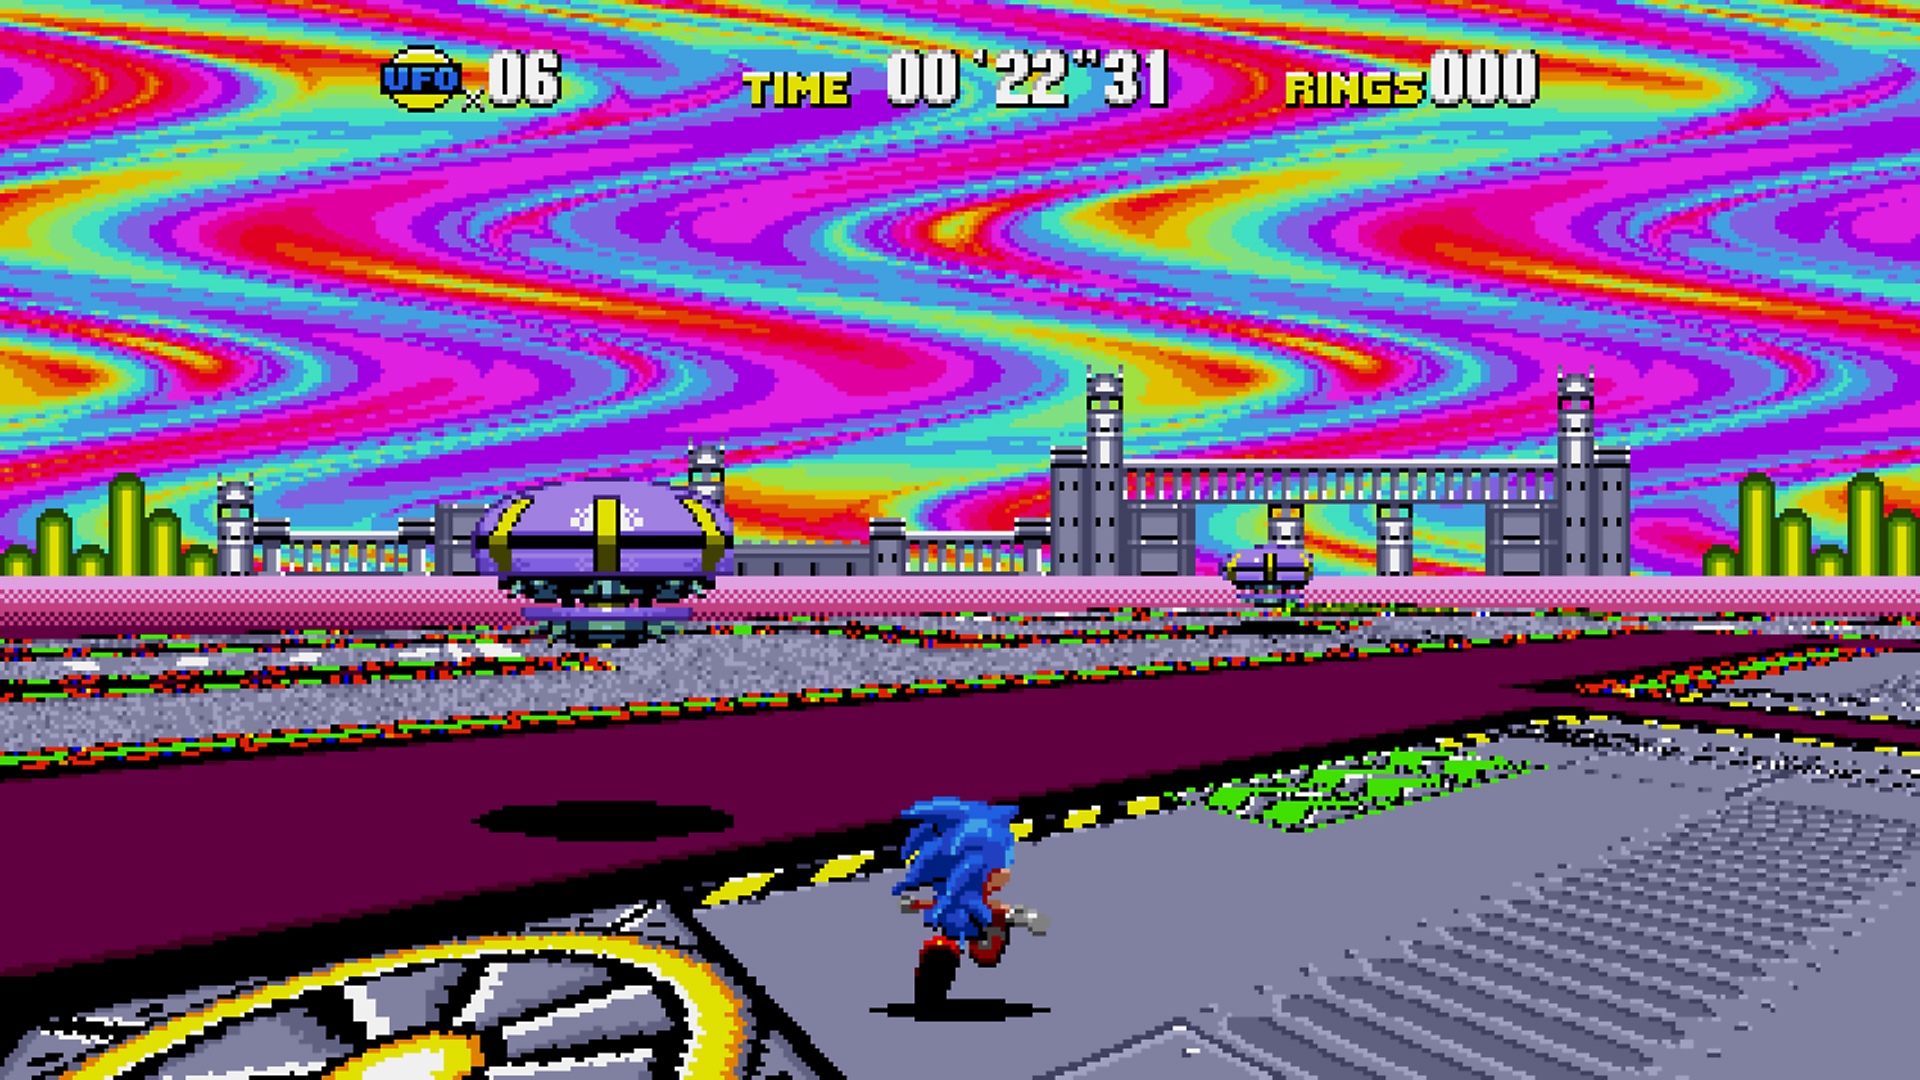 Snimka zaslona iz igre Sonic Origins koja prikazuje Sonica kako trči kroz razinu s nebom u boji duge